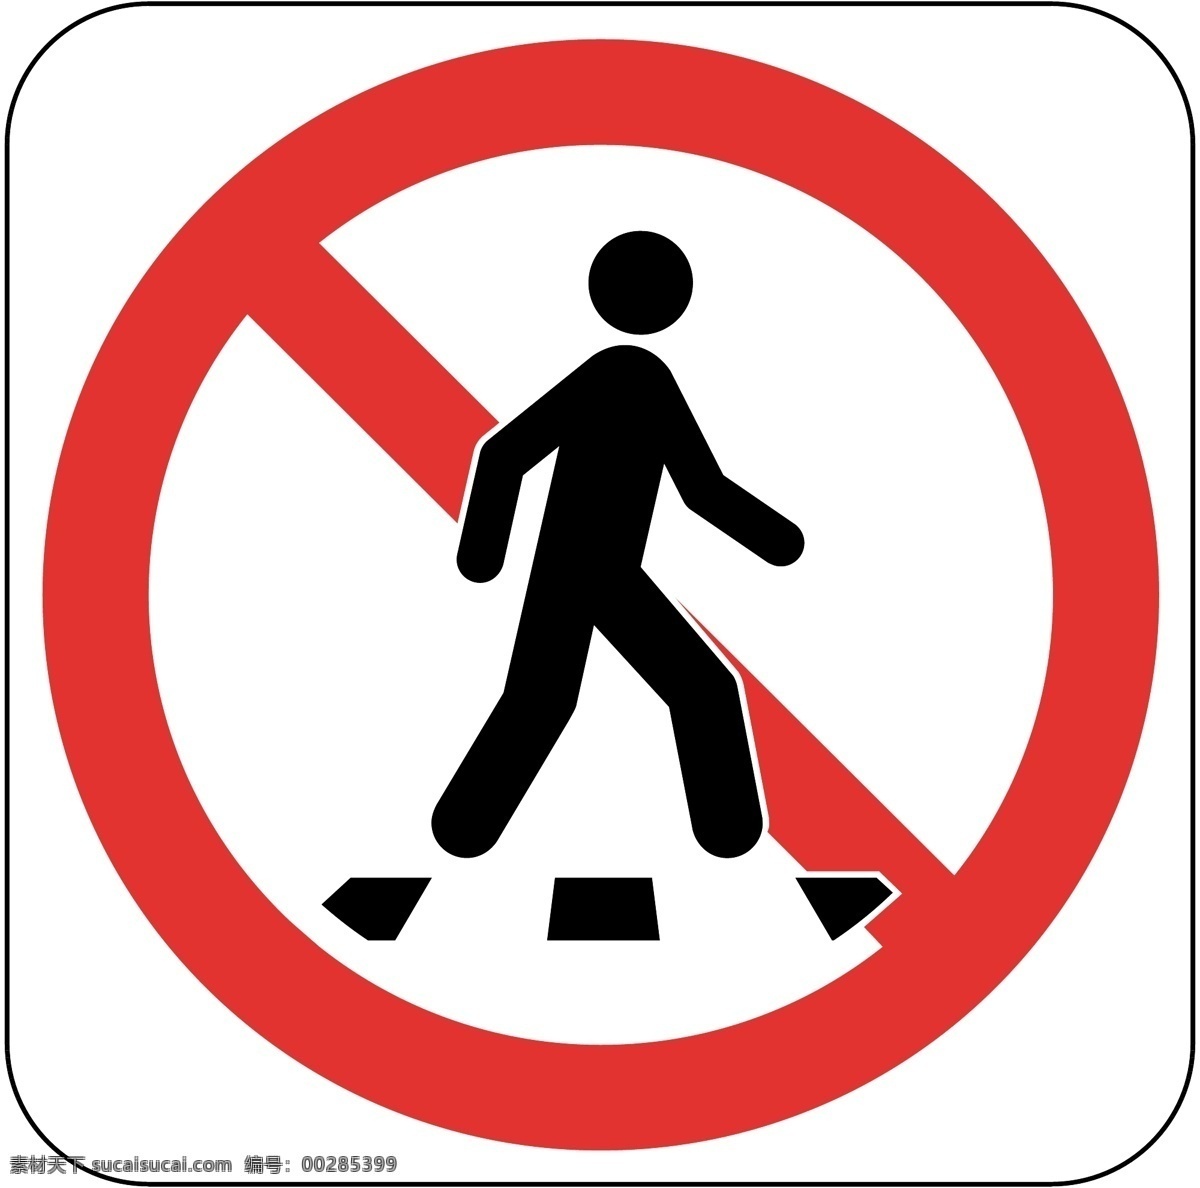 非行人道 禁止行人通过 非人行道 请勿通行 行人止步 标志图标 公共标识标志